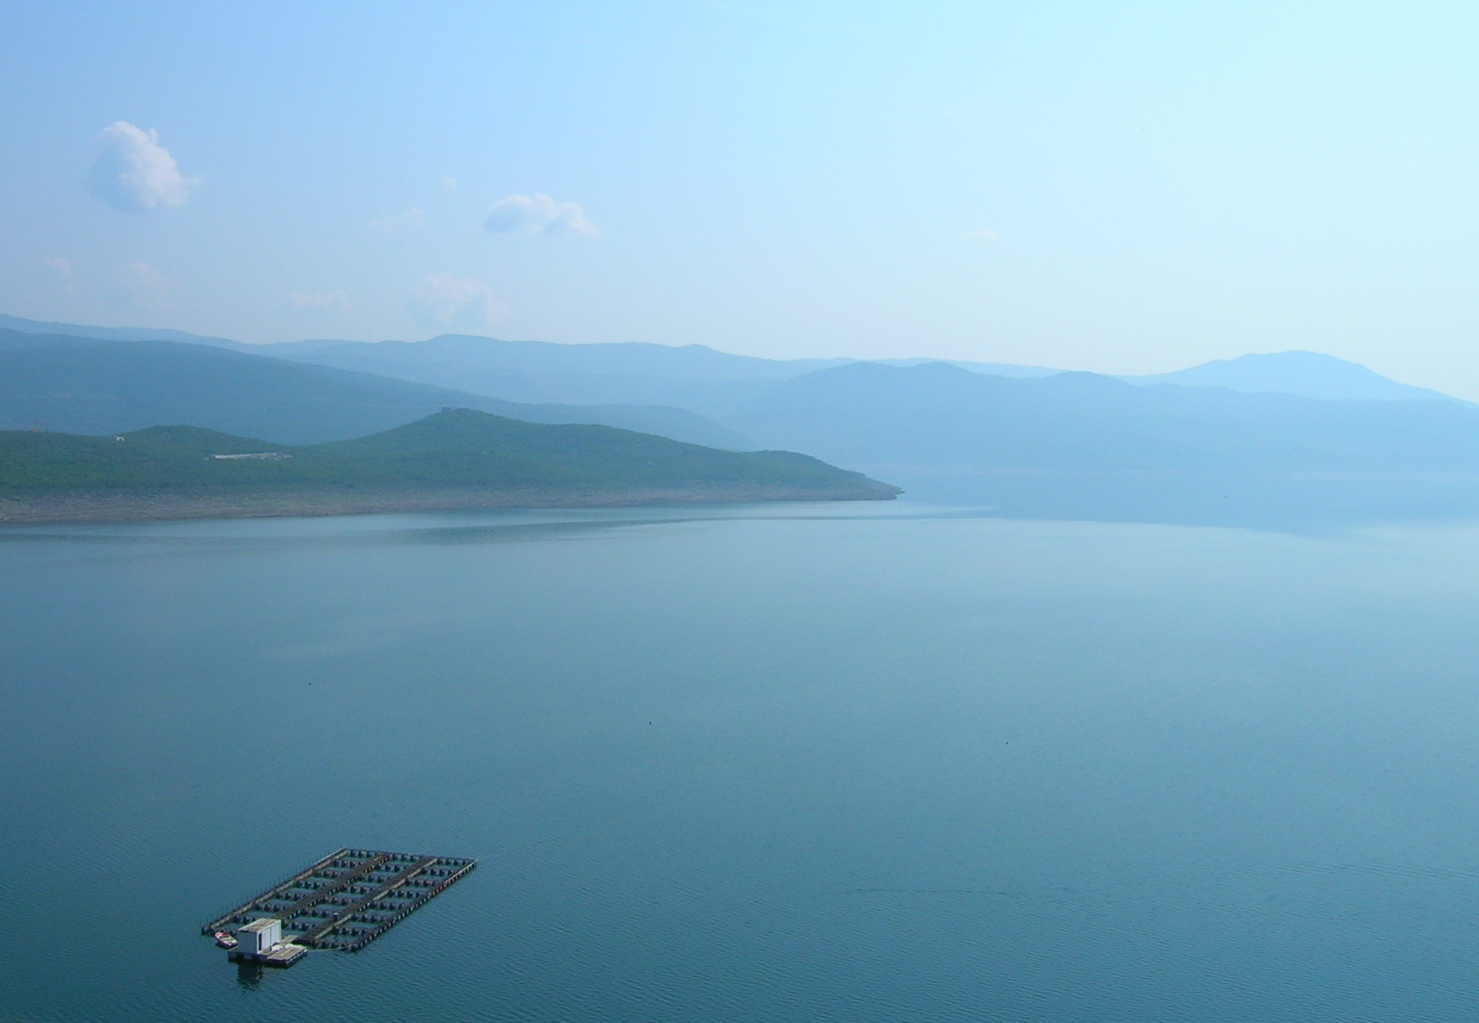 Zajednički projekat Republike Srpske i Crne Gore: Hidroelektrana i solarna elektrana na Bilećkom jezeru